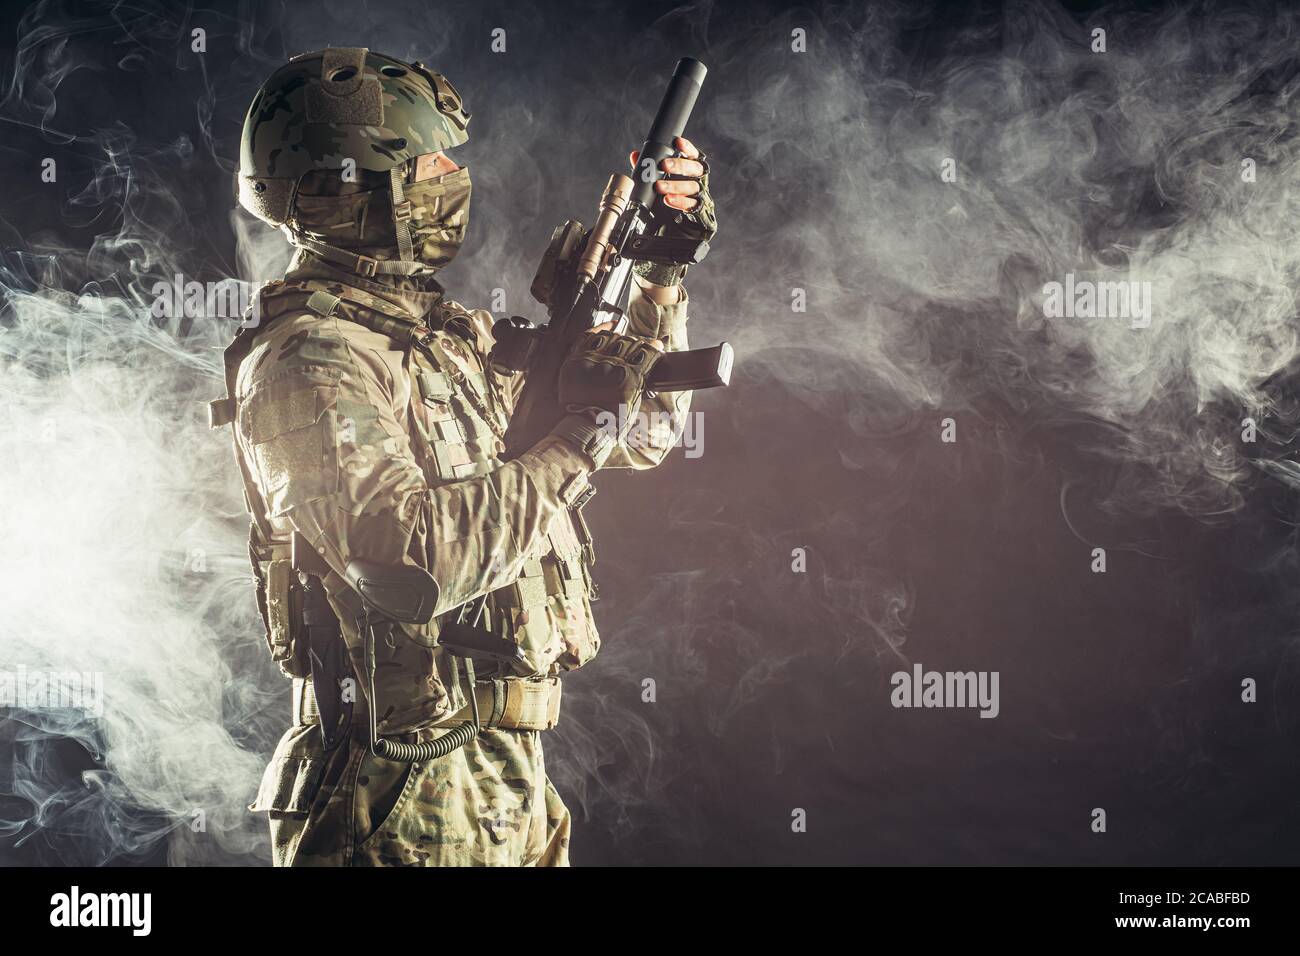 jeune militaire, soldat tenant un fusil portant des vêtements militaires, camouflage vert et casque sur la tête, combattant Banque D'Images